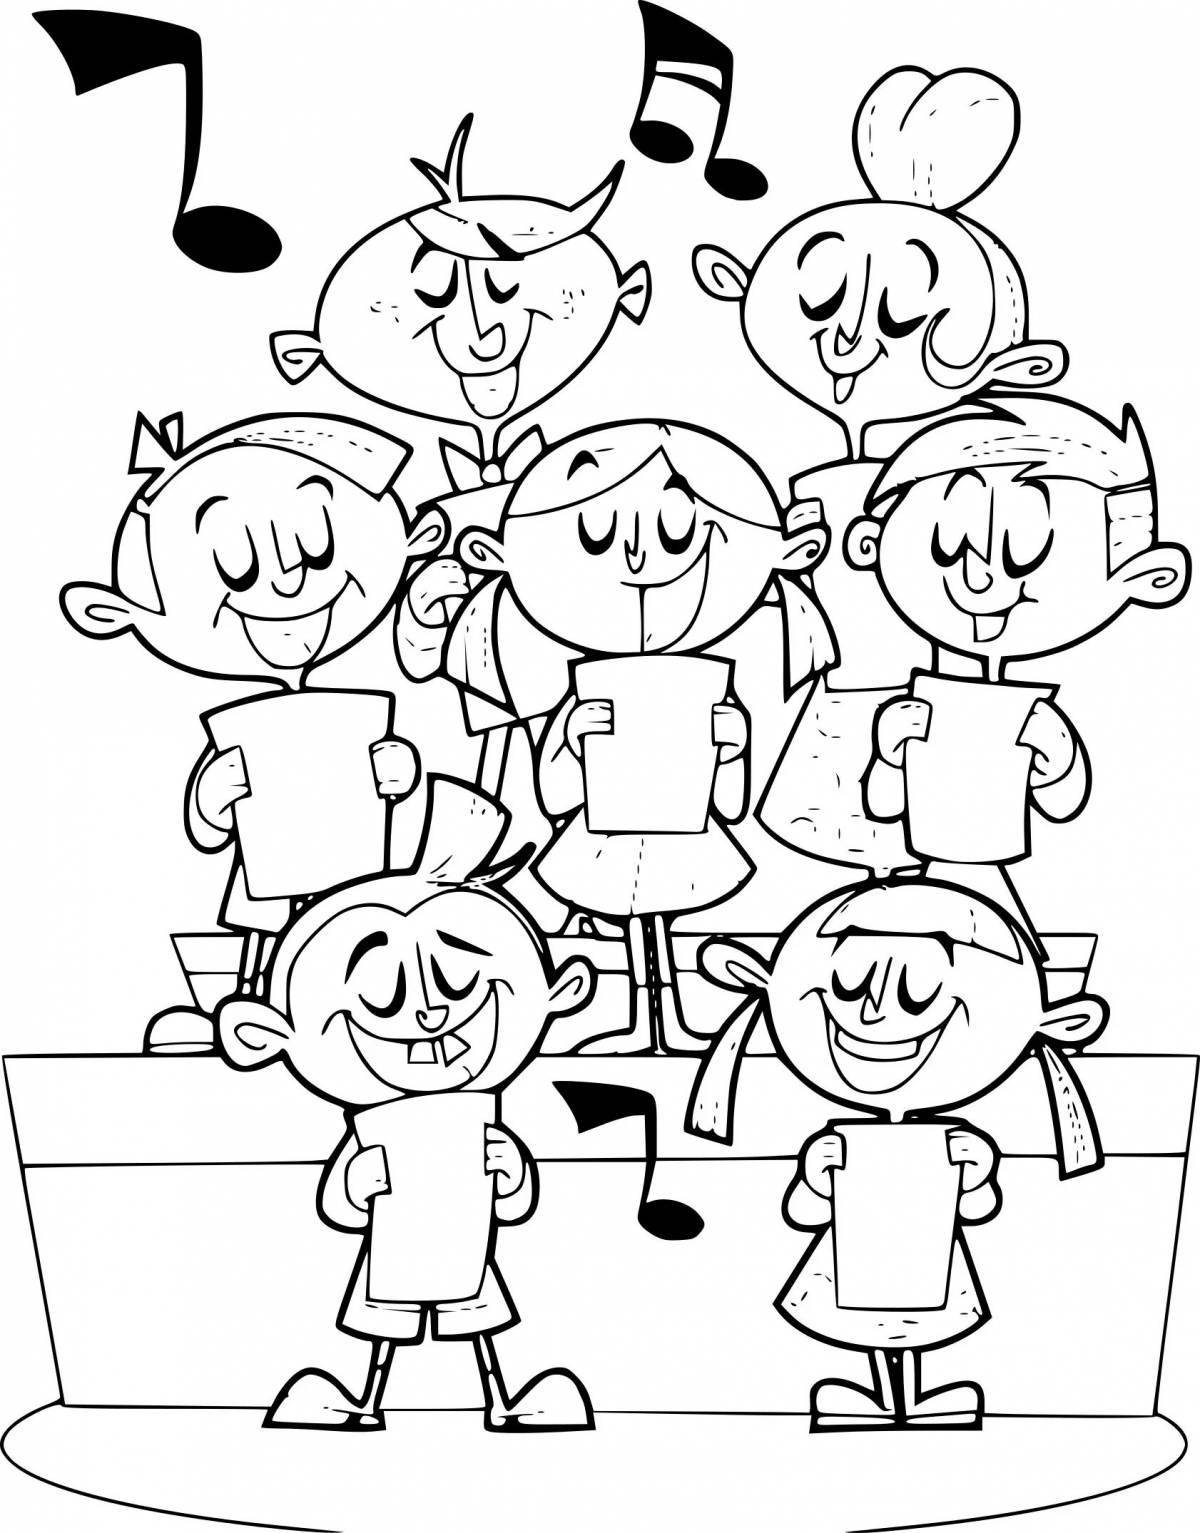 Cheering children sing